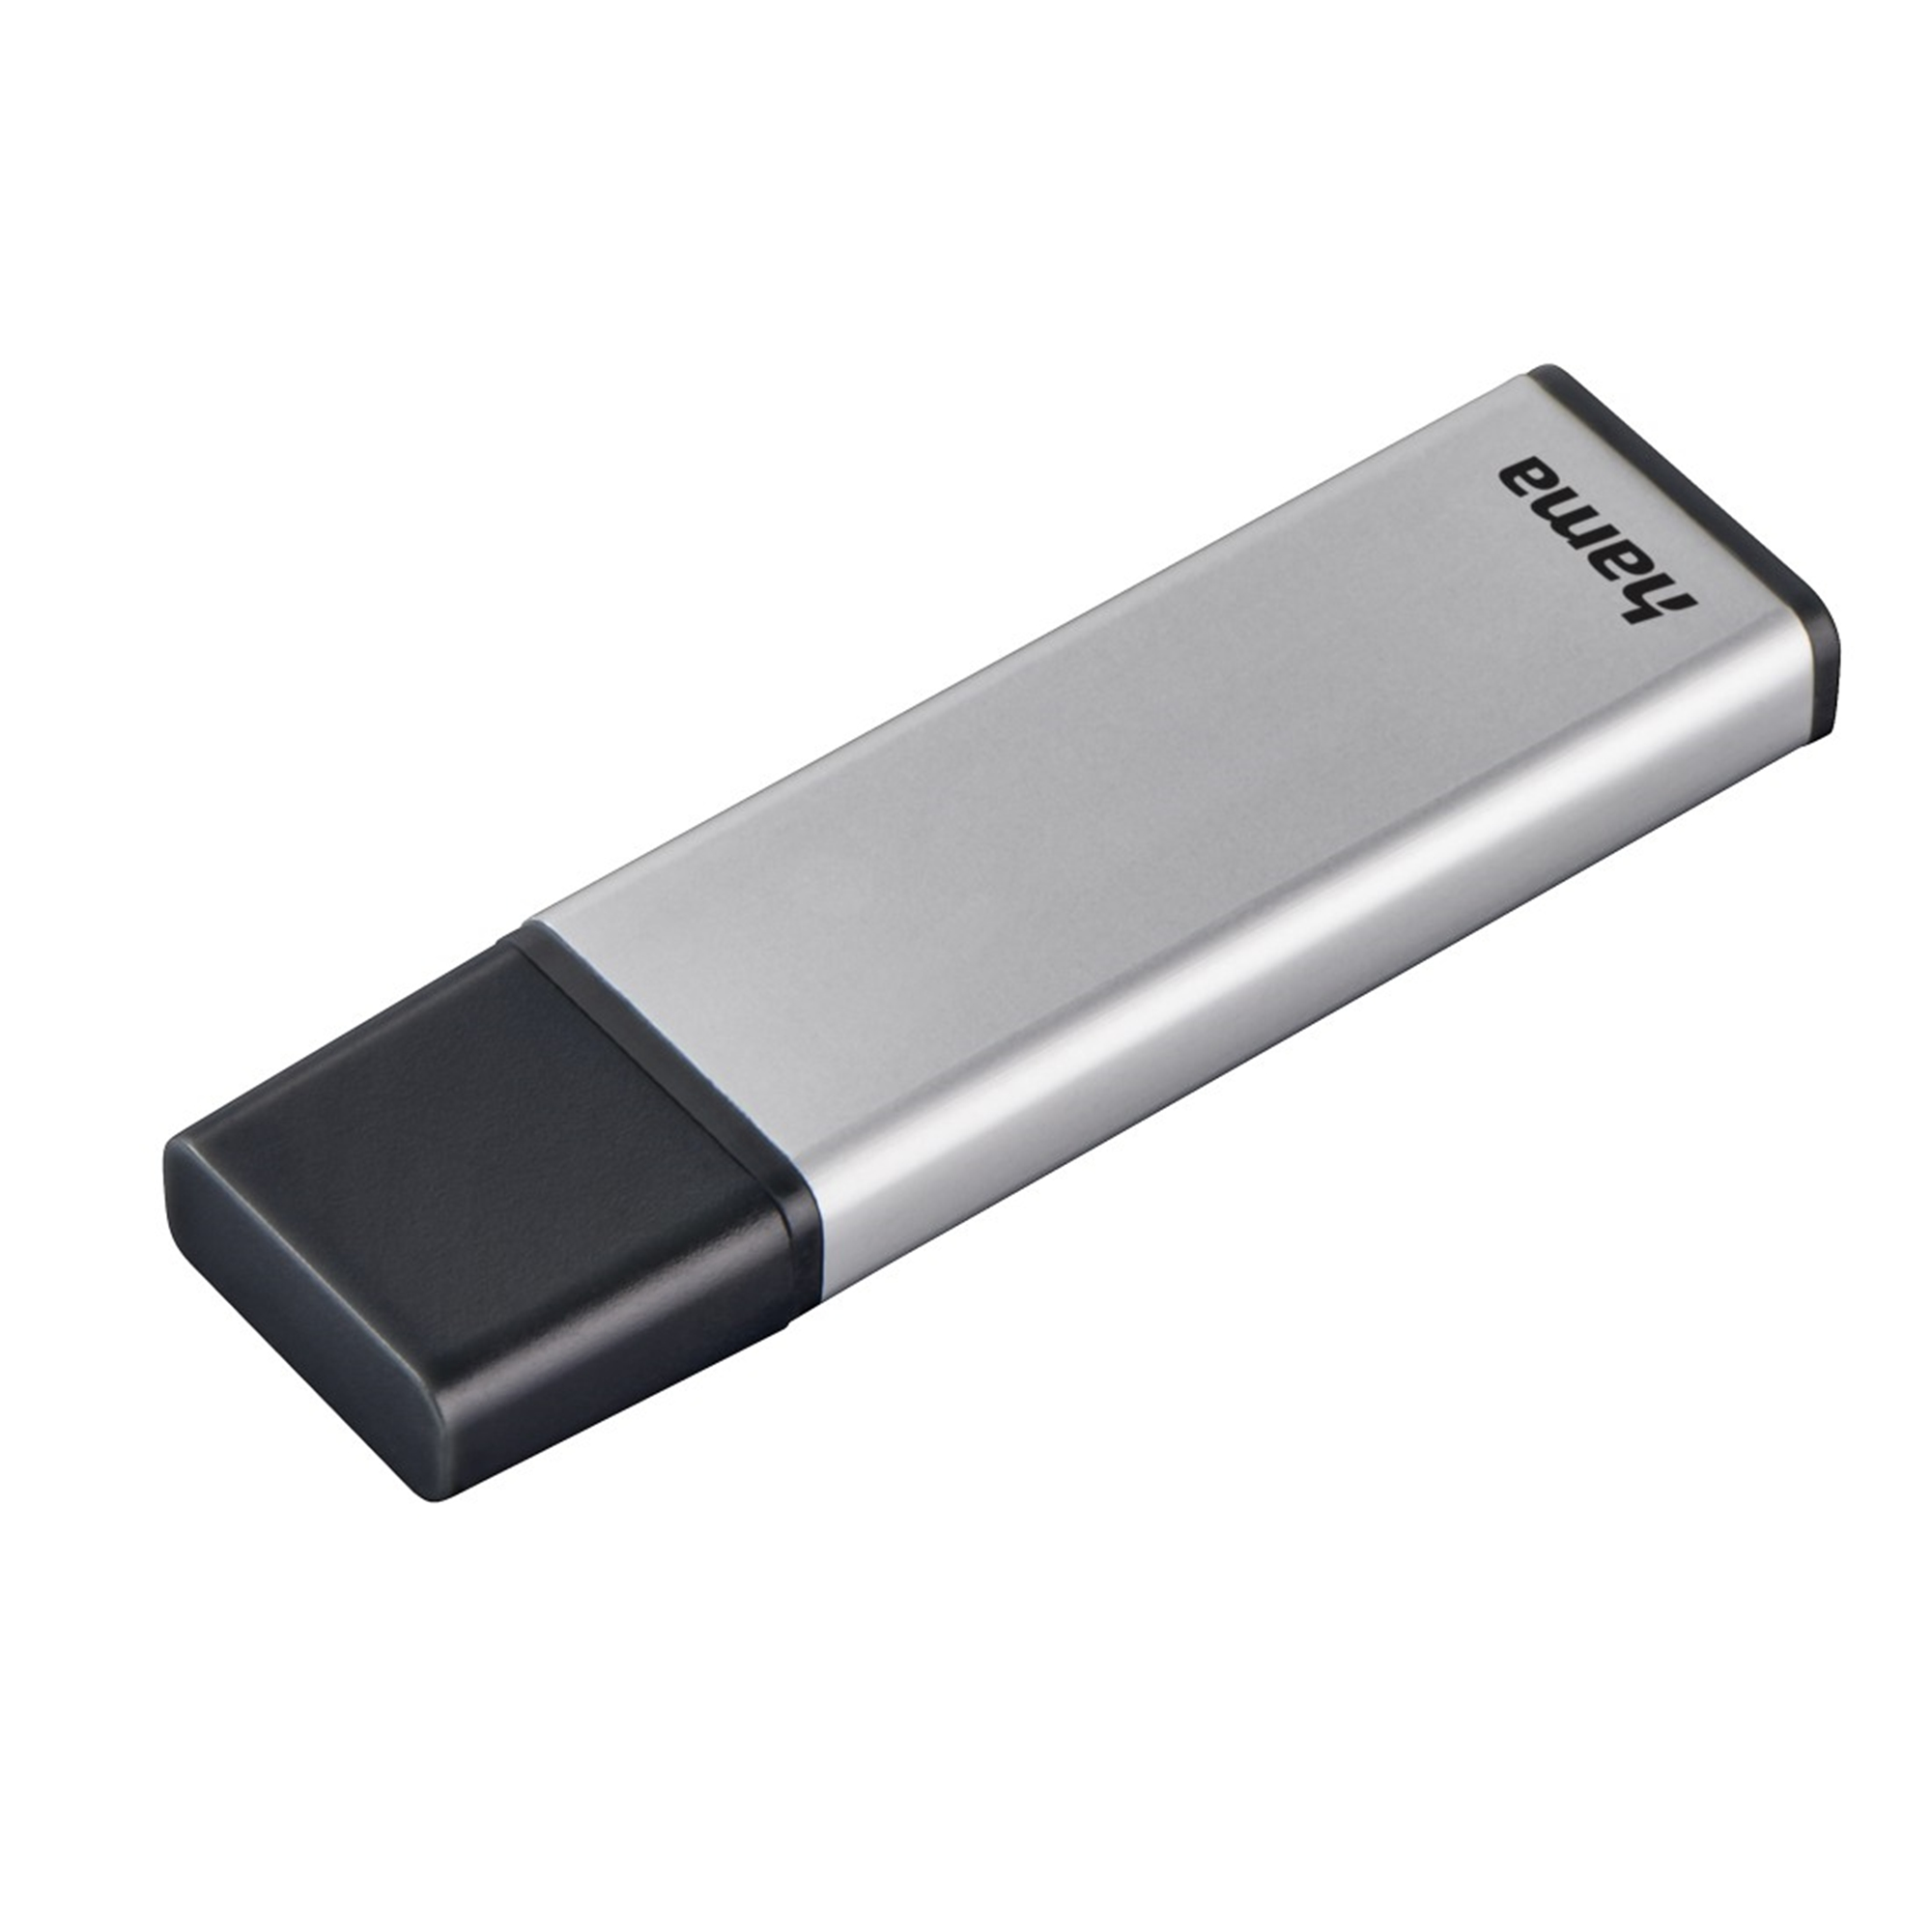 (Silber, GB 16 HAMA 16 USB-Stick Classic GB)